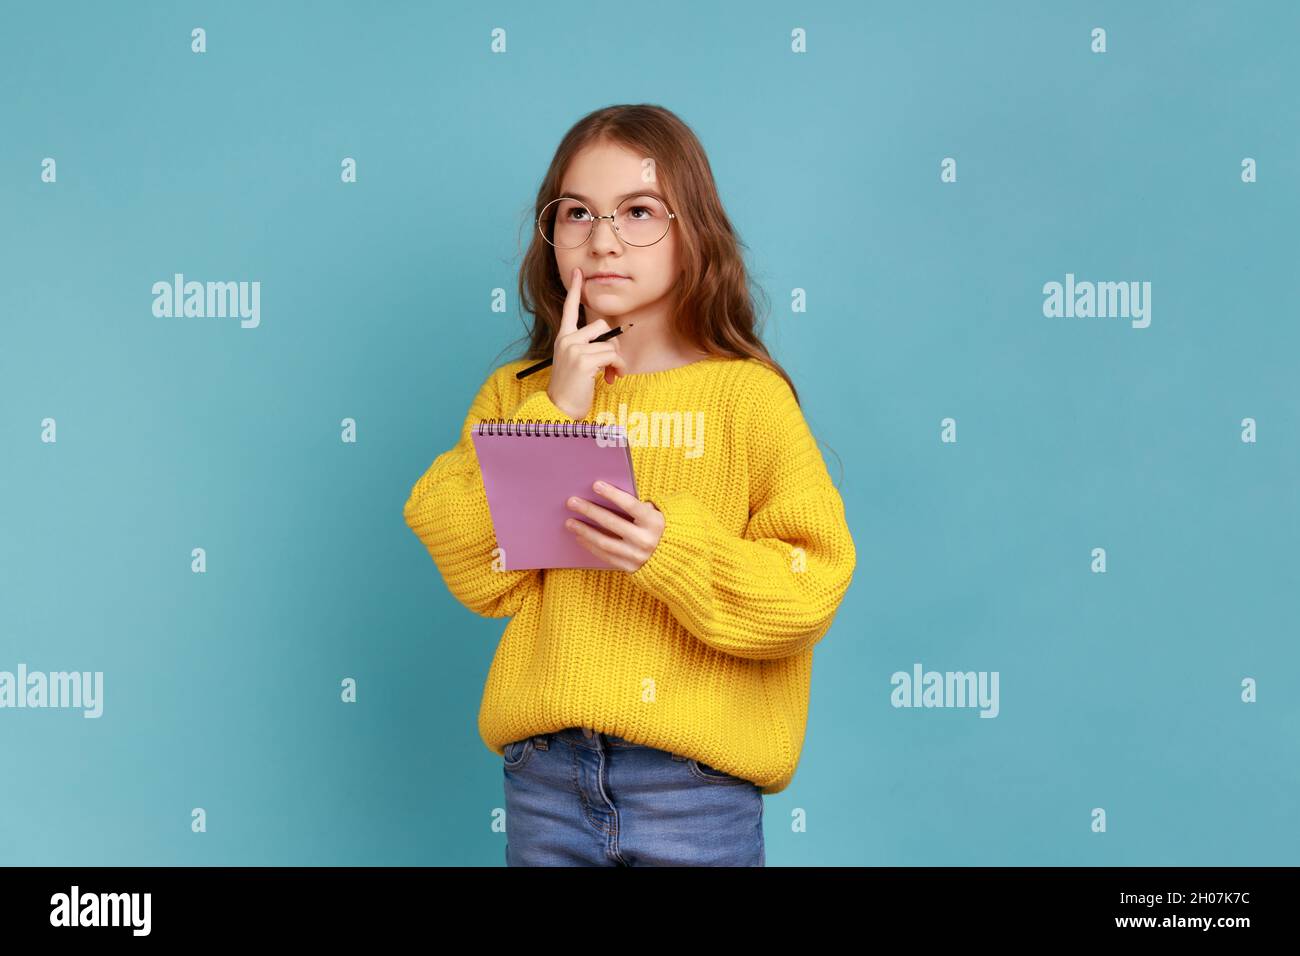 Porträt eines kleinen Mädchens, das im Notizbuch schreibt, denkt, Notizen macht, Schulkind Hausaufgaben macht, gelben Pullover im lässigen Stil trägt. Innenaufnahme des Studios isoliert auf blauem Hintergrund. Stockfoto